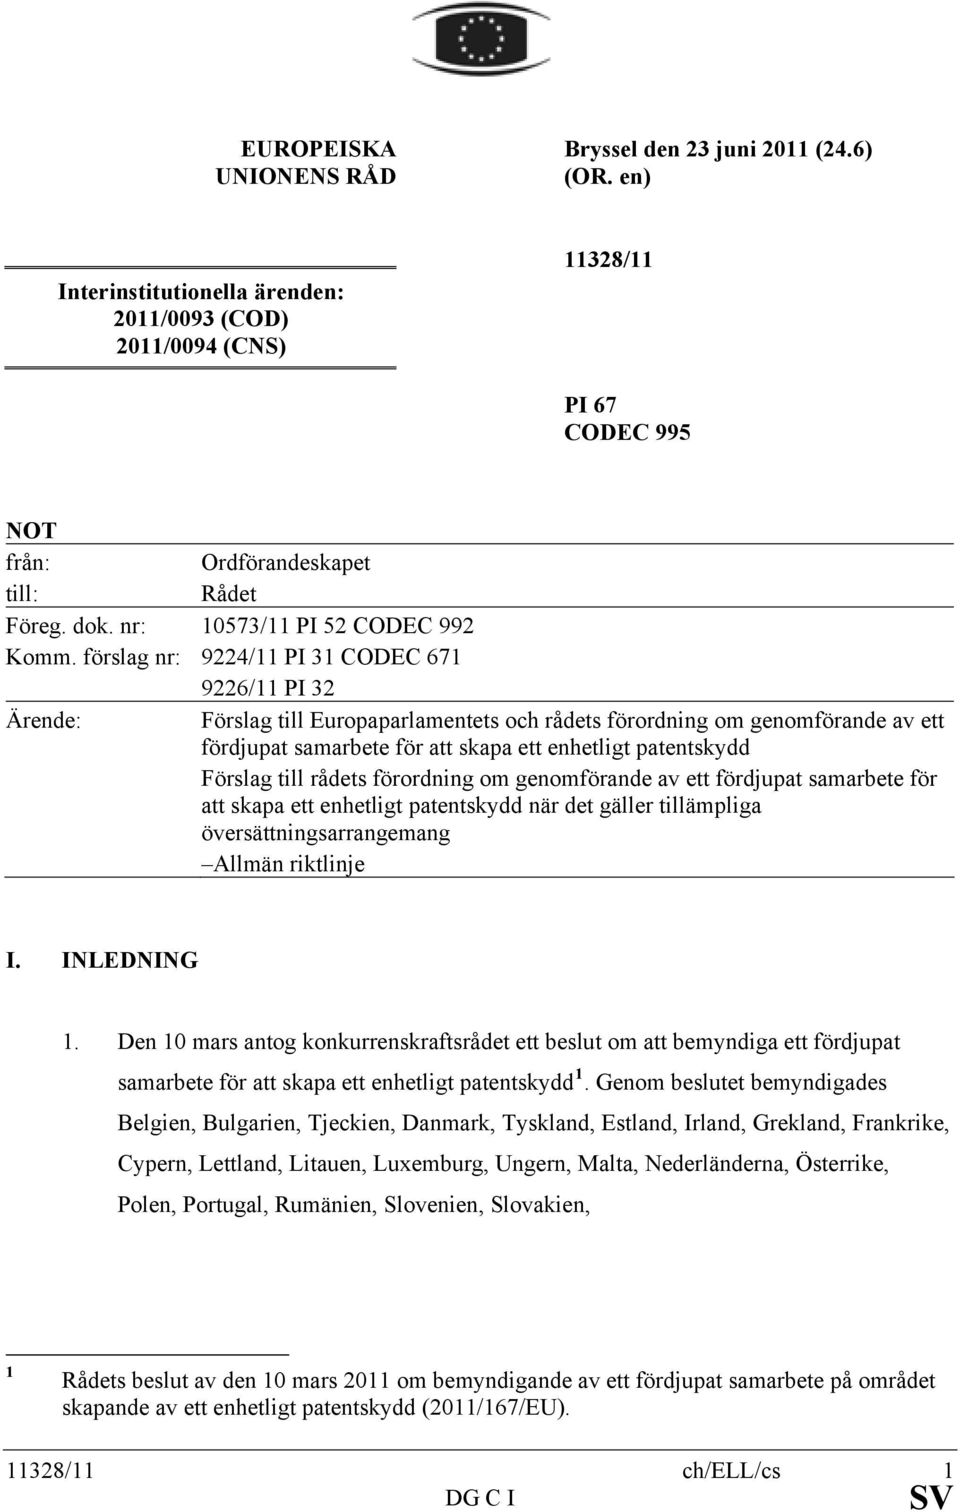 förslag nr: 9224/11 PI 31 CODEC 671 9226/11 PI 32 Ärende: Förslag till Europaparlamentets och rådets förordning om genomförande av ett fördjupat samarbete för att skapa ett enhetligt patentskydd